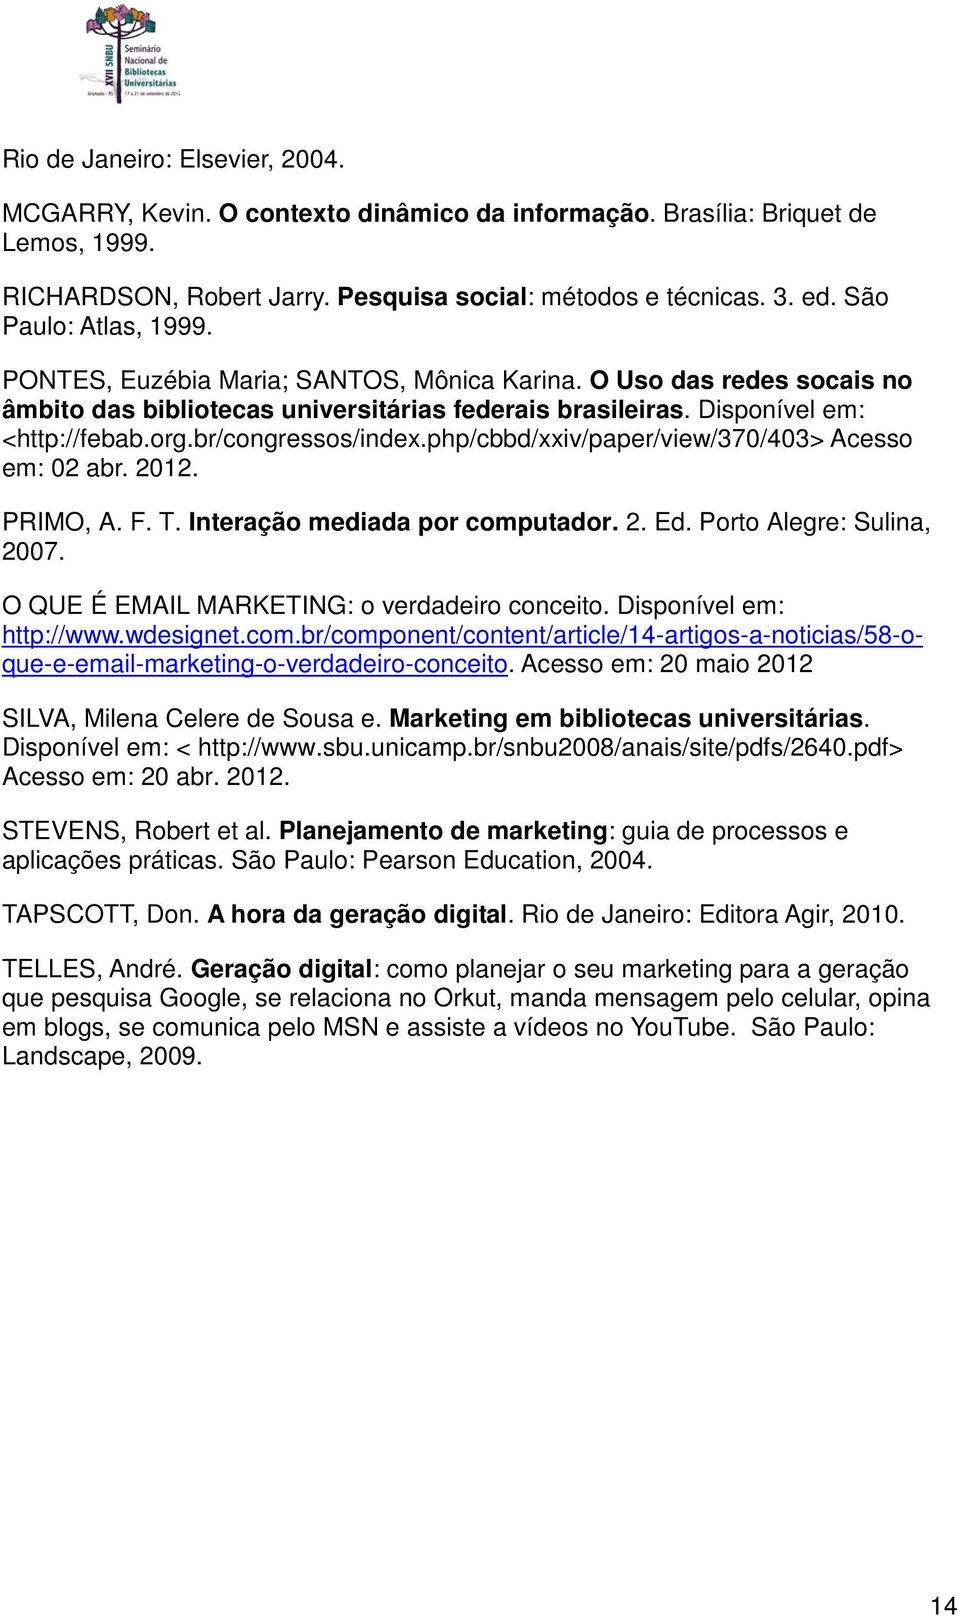 br/congressos/index.php/cbbd/xxiv/paper/view/370/403> Acesso em: 02 abr. 2012. PRIMO, A. F. T. Interação mediada por computador. 2. Ed. Porto Alegre: Sulina, 2007.